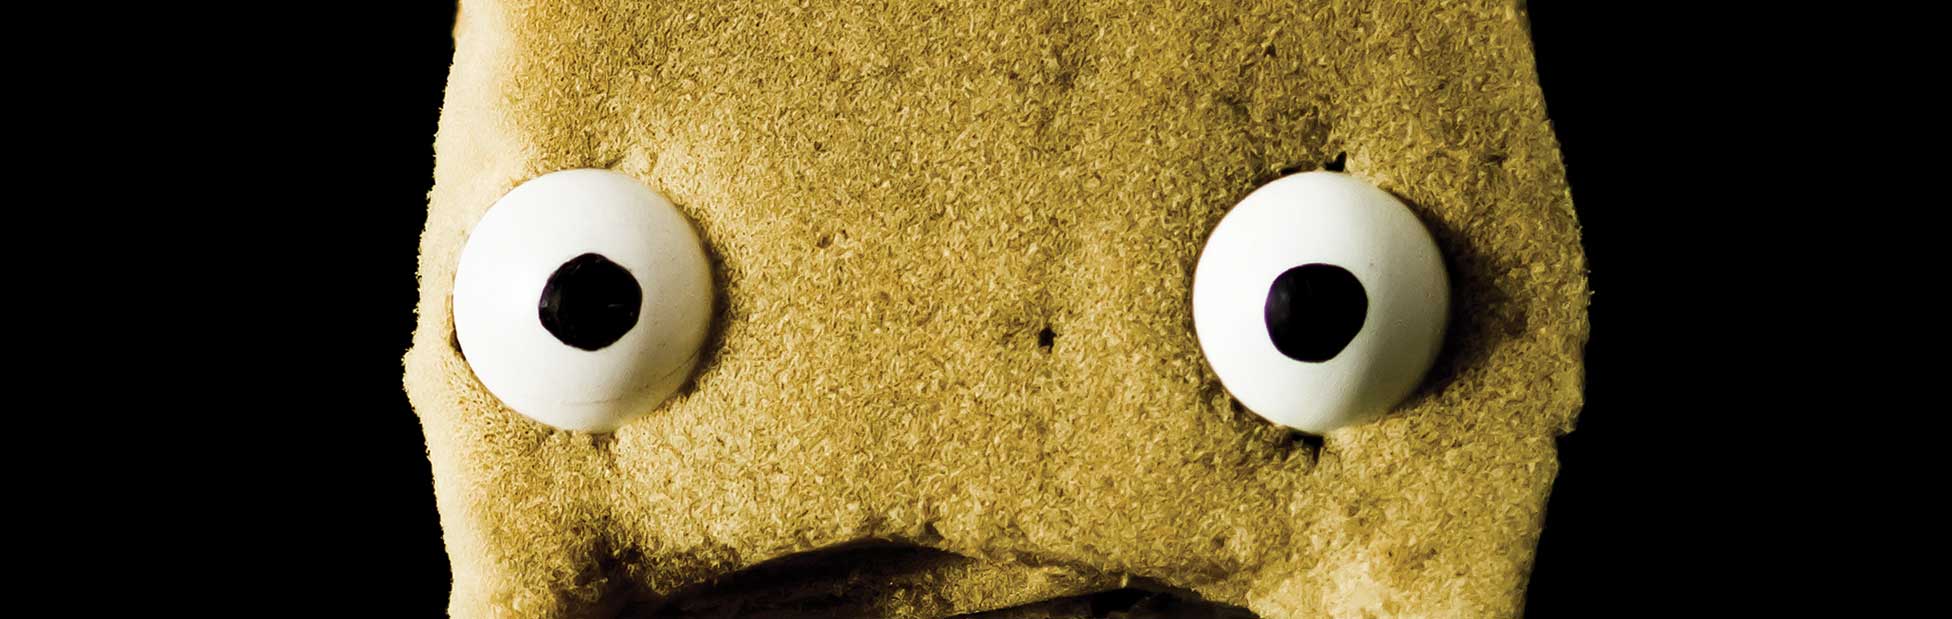 Sponge puppet eyes